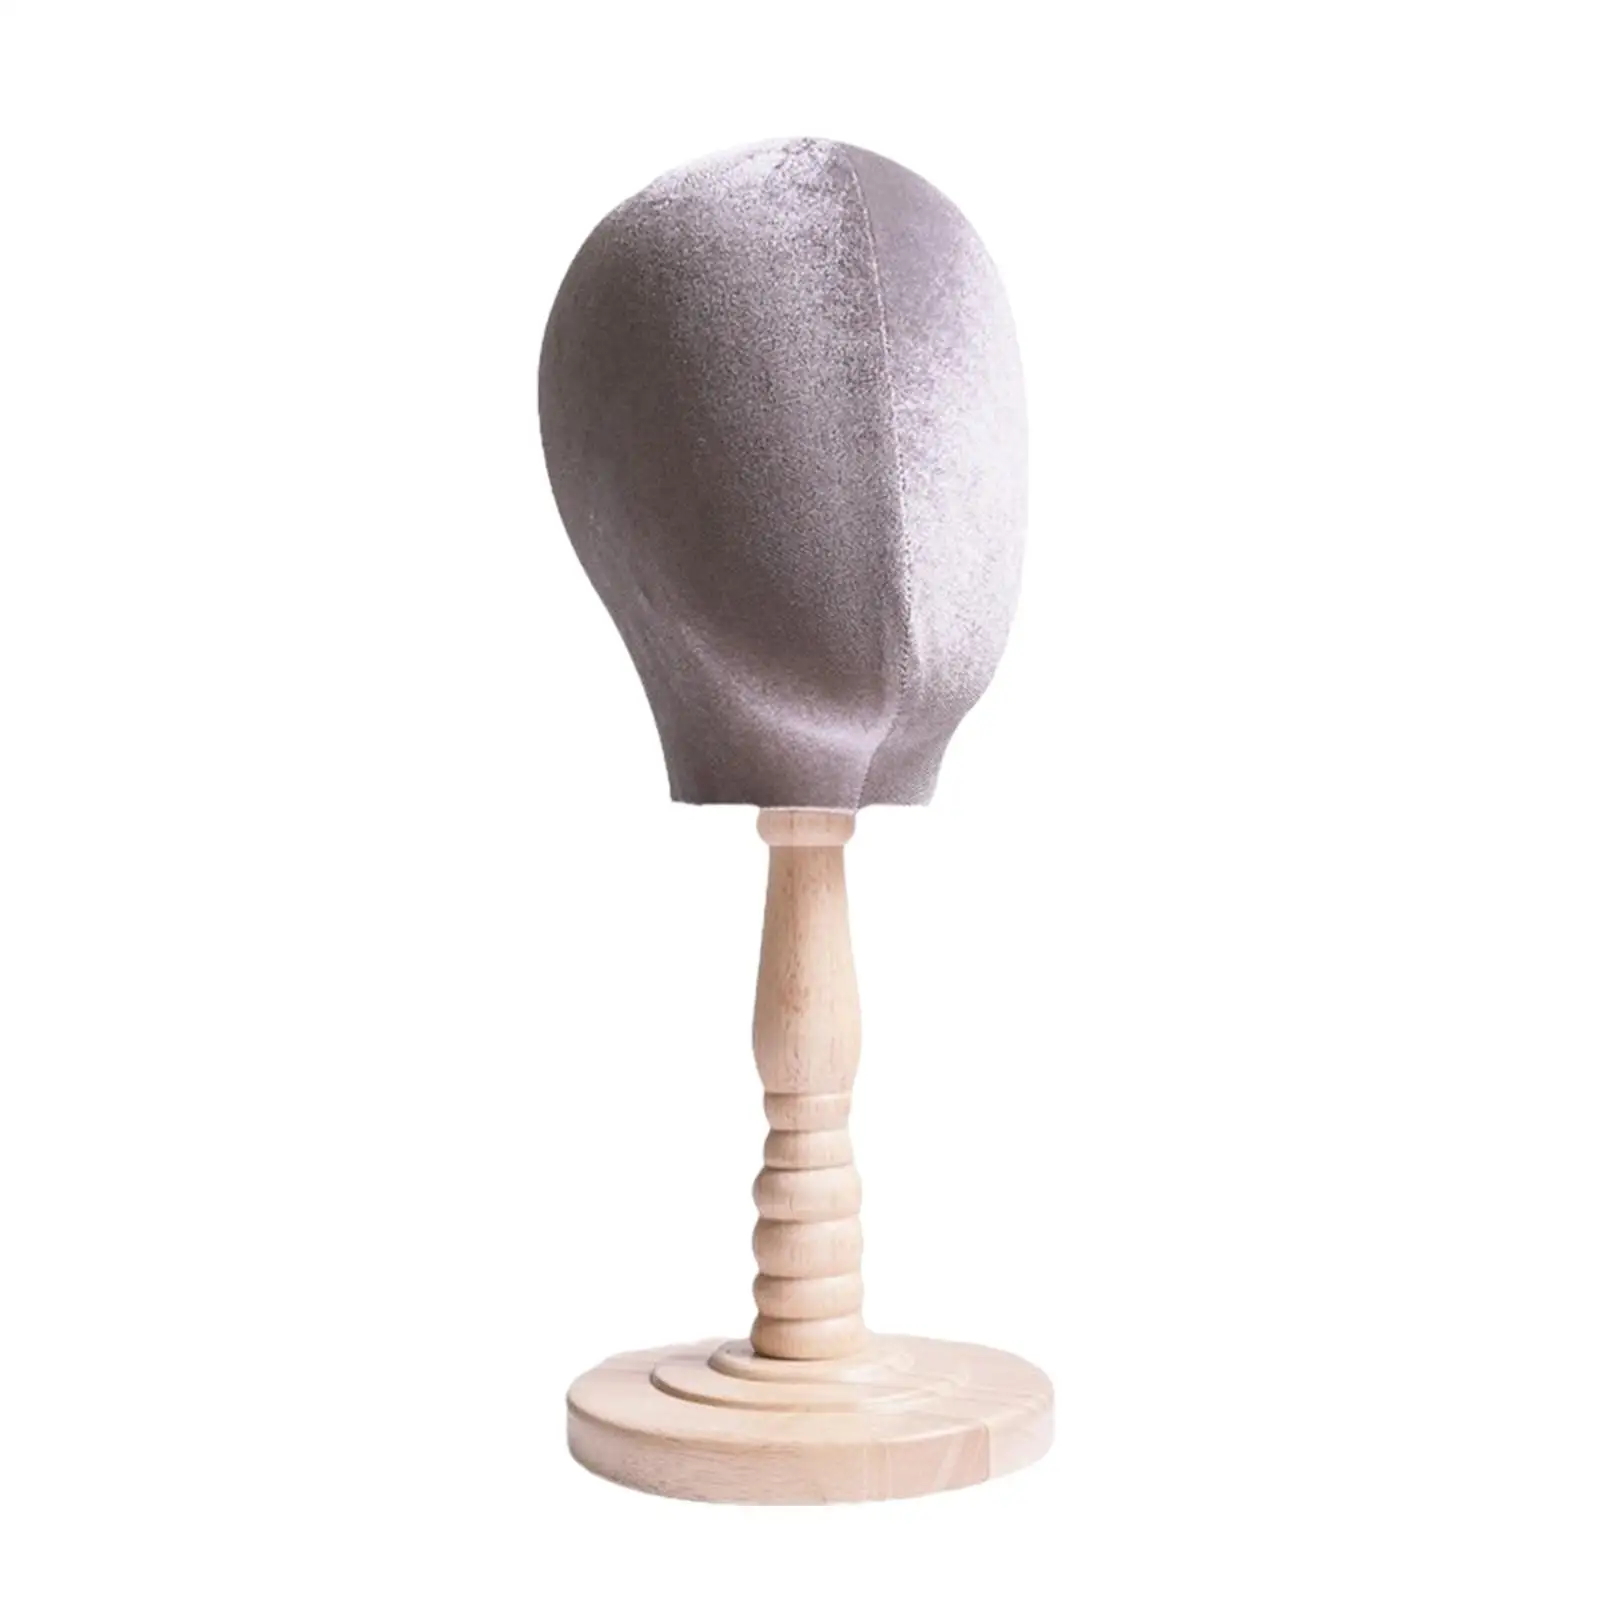 

Головка-манекен, портативная многофункциональная подставка для парика, демонстрационная модель головы, головной убор, головной убор для шляп, очков